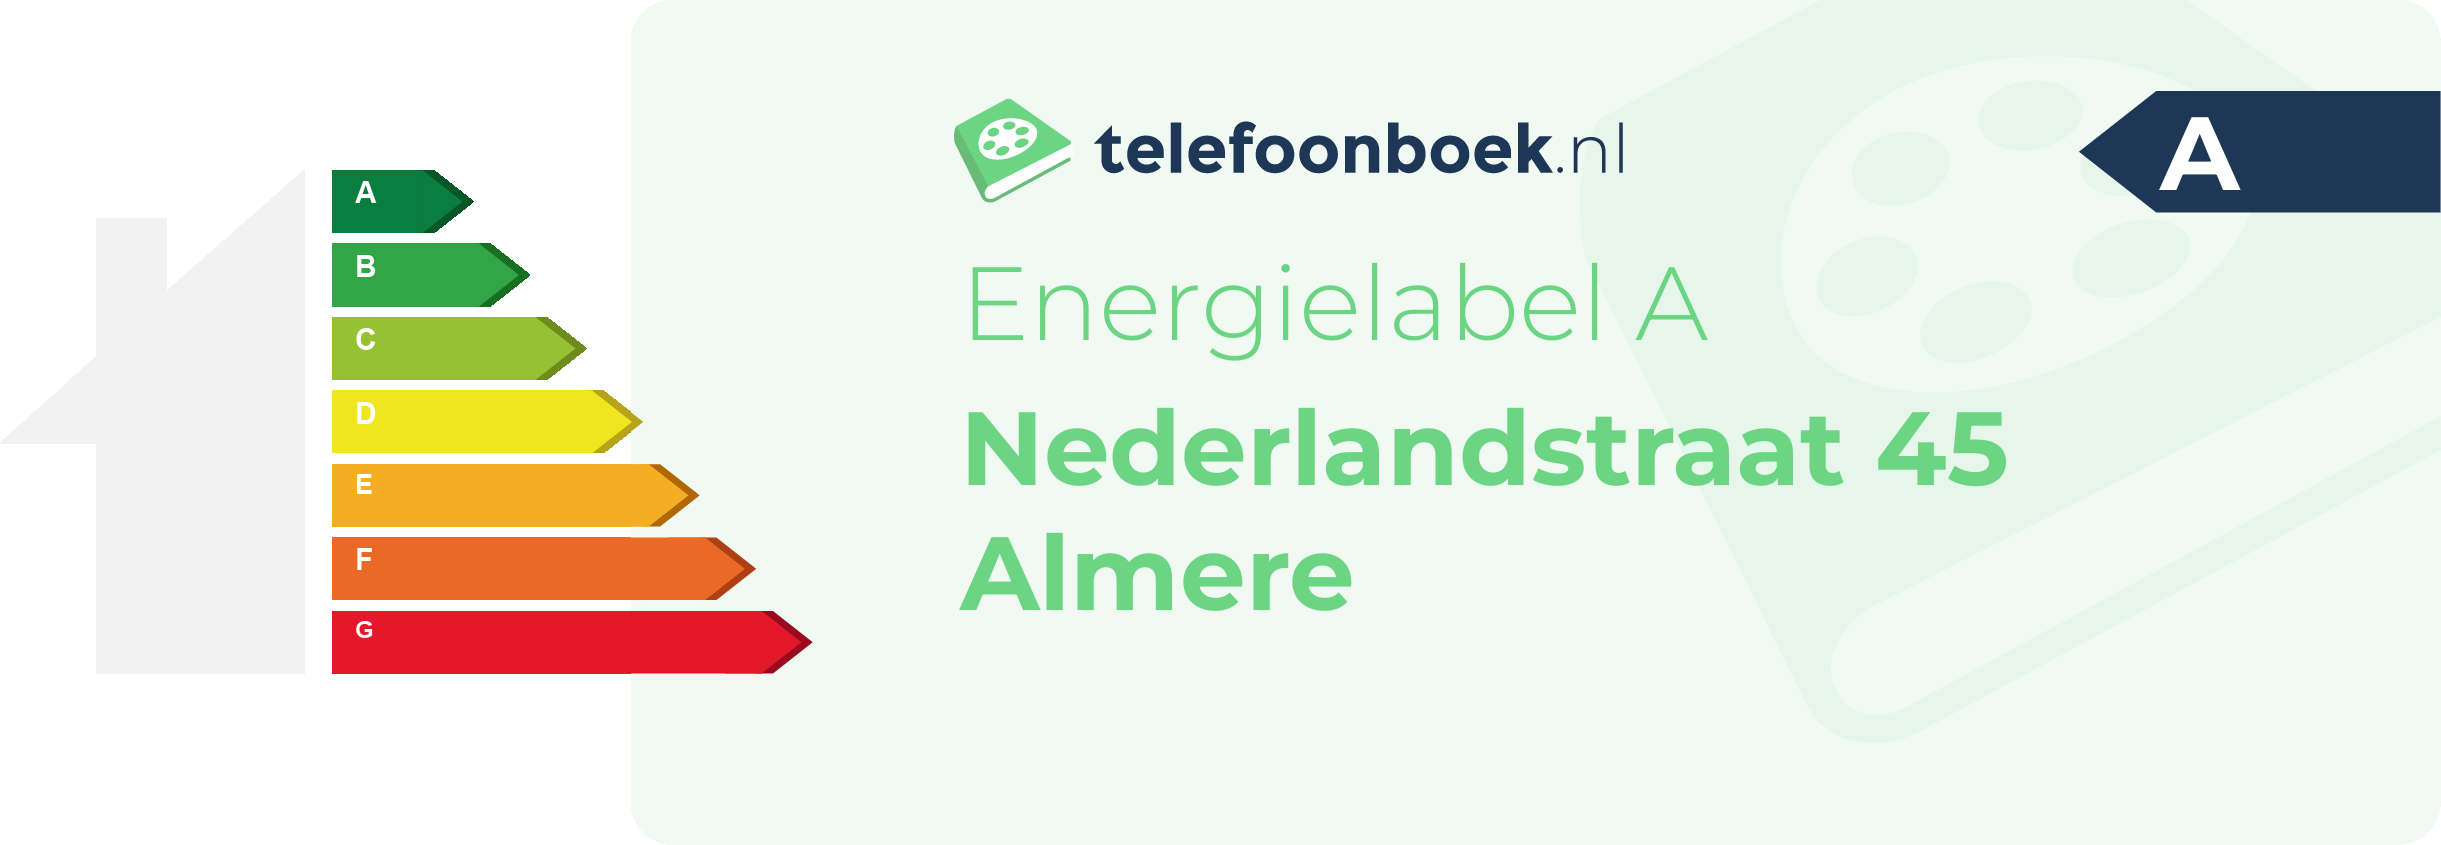 Energielabel Nederlandstraat 45 Almere